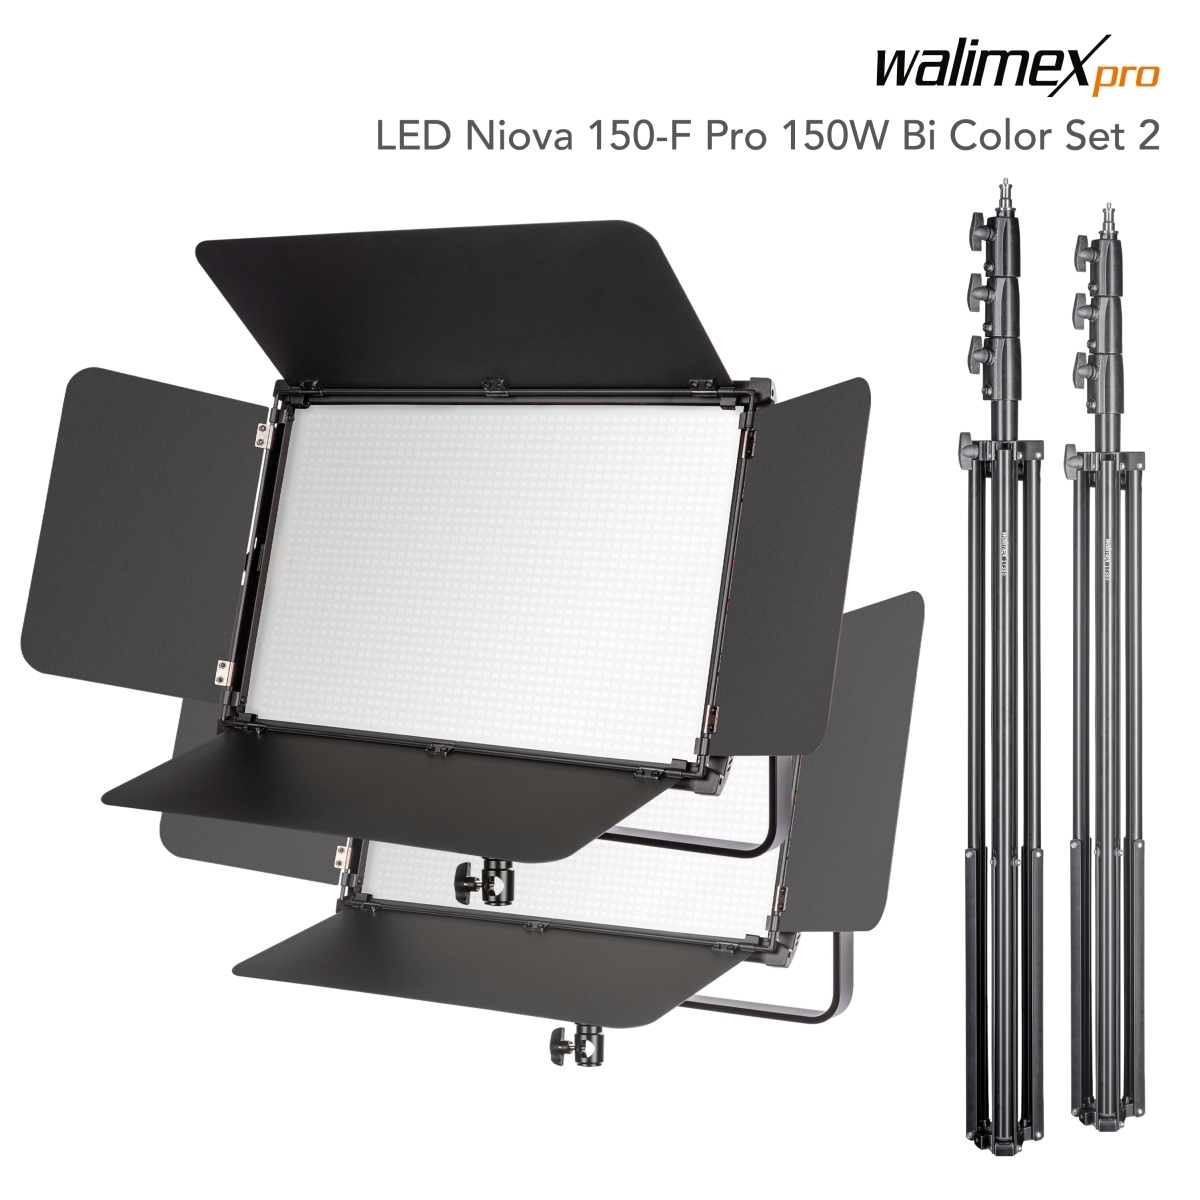 Walimex pro LED Niova 150-F Pro 150W Bi Color Set2